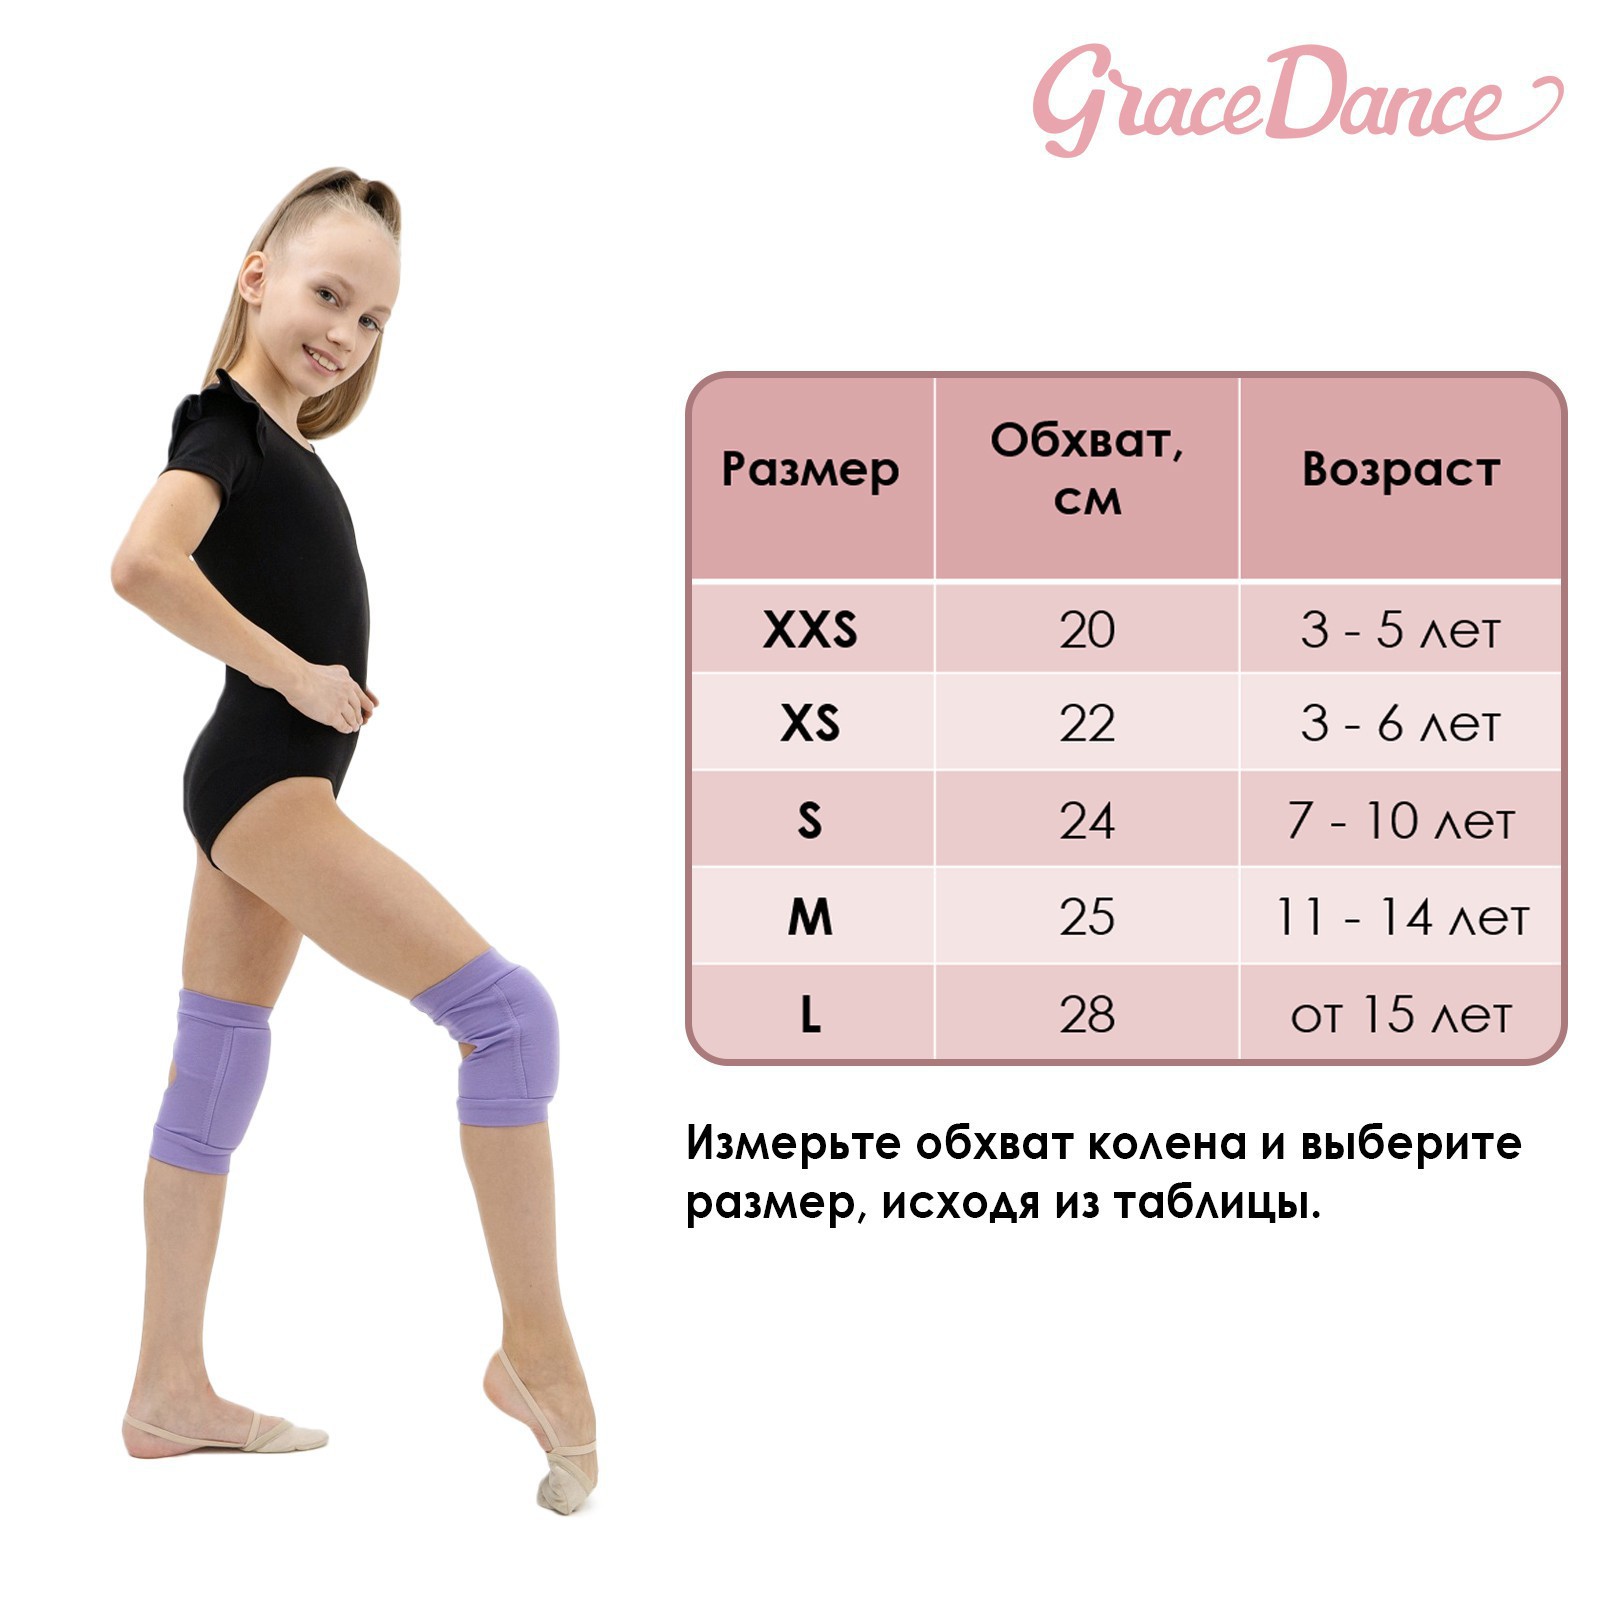 Наколенники Grace Dance для гимнастики и танцев с уплотнителем. размер S 7-10 лет. цвет чёрный - фото 10